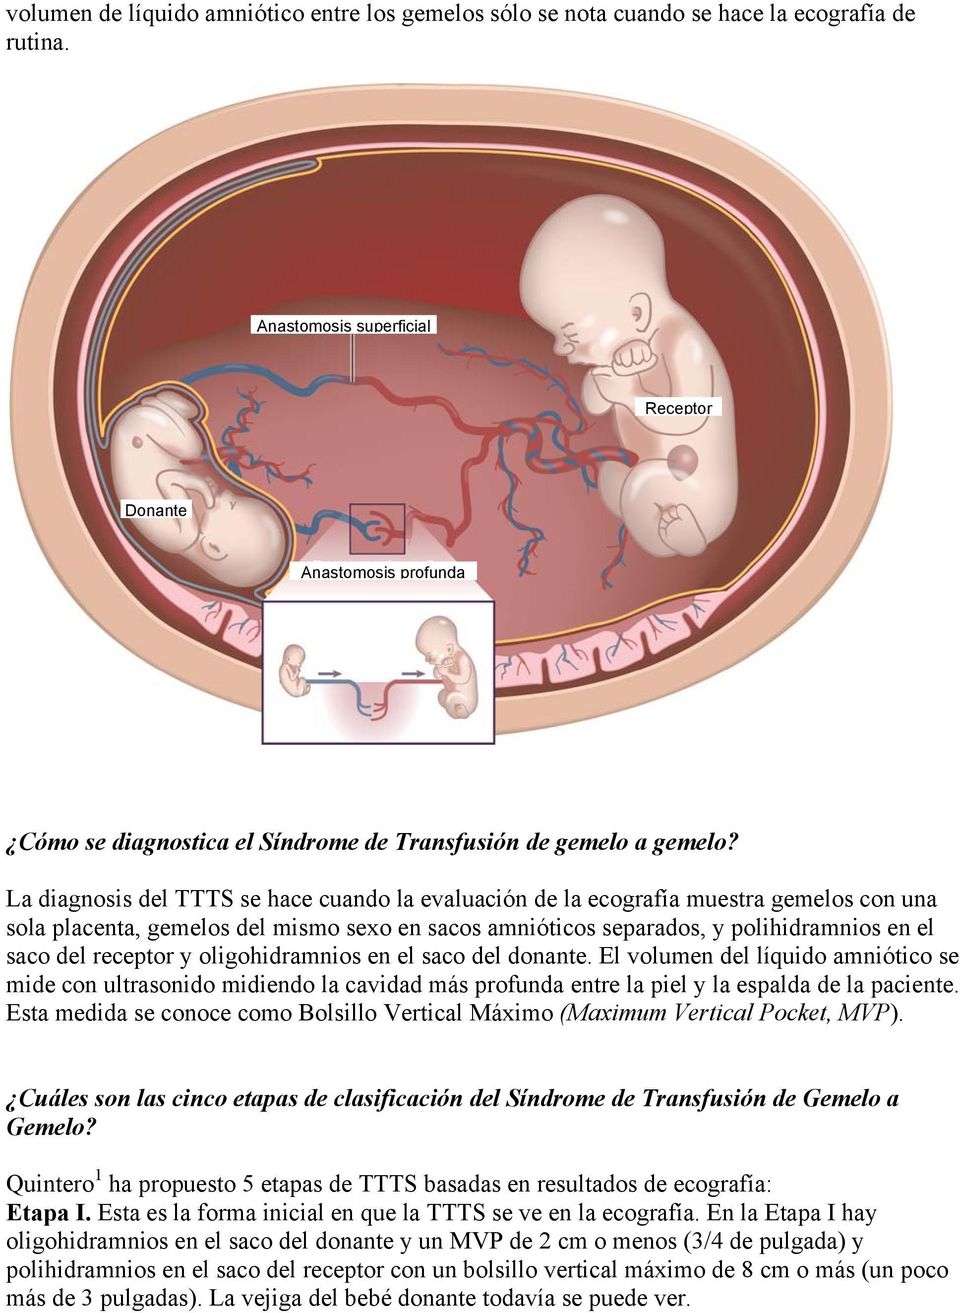 La diagnosis del TTTS se hace cuando la evaluación de la ecografía muestra gemelos con una sola placenta, gemelos del mismo sexo en sacos amnióticos separados, y polihidramnios en el saco del